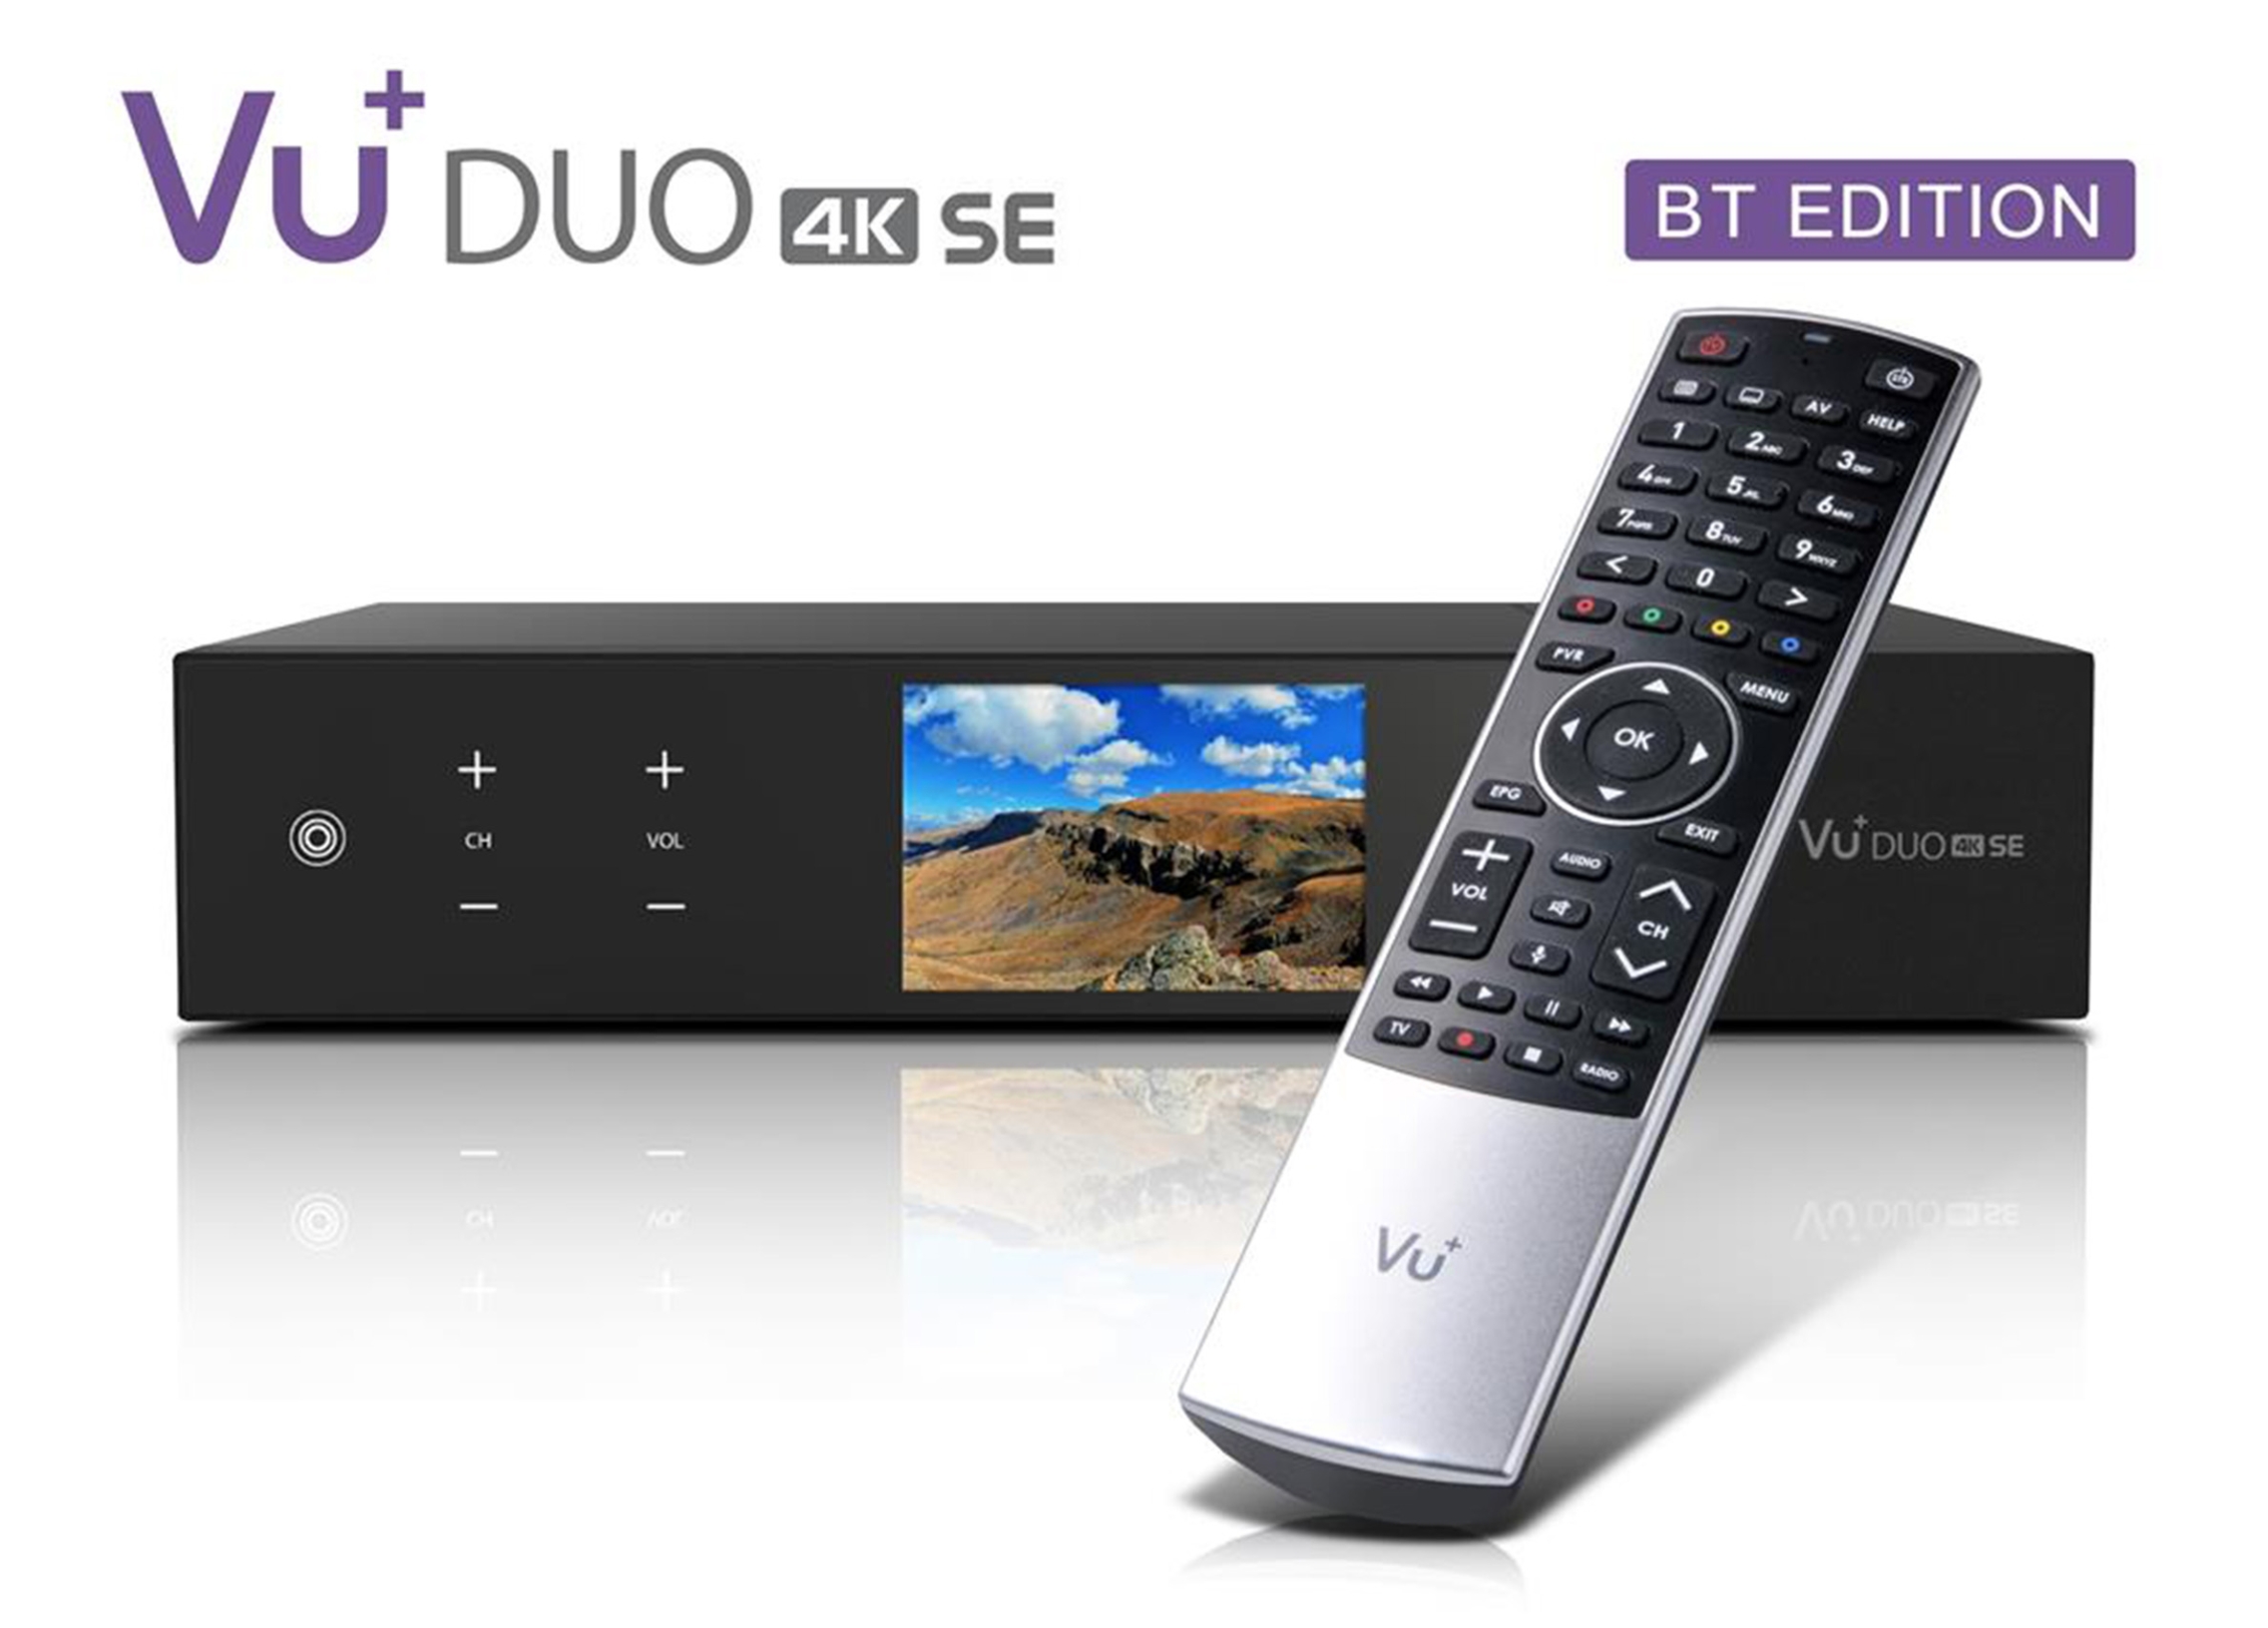 VU+ Duo 4K SE BT 1xDVB-S2X FBC Twin/1x DVB-T2 DUAL Linux Receiver